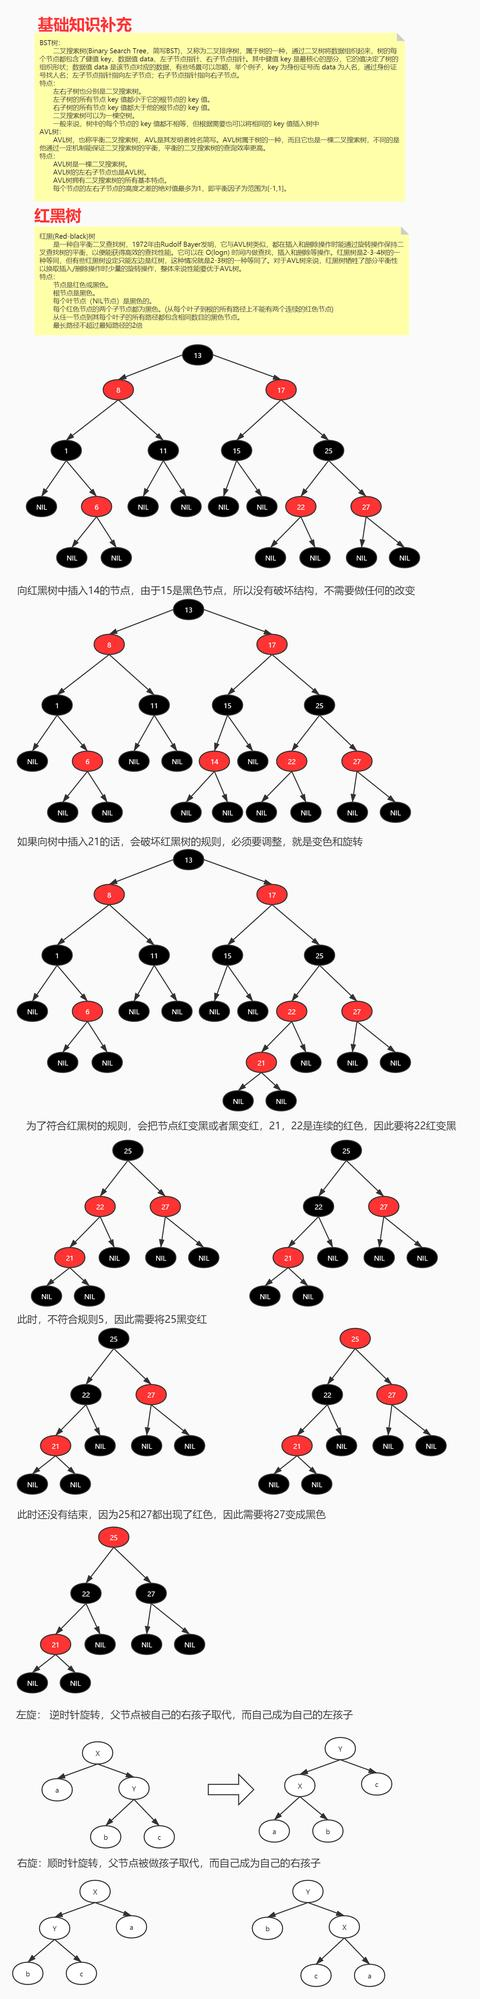 红黑树+B+树+MySQL索引系统+MySQL架构+MySQL数据结构选择